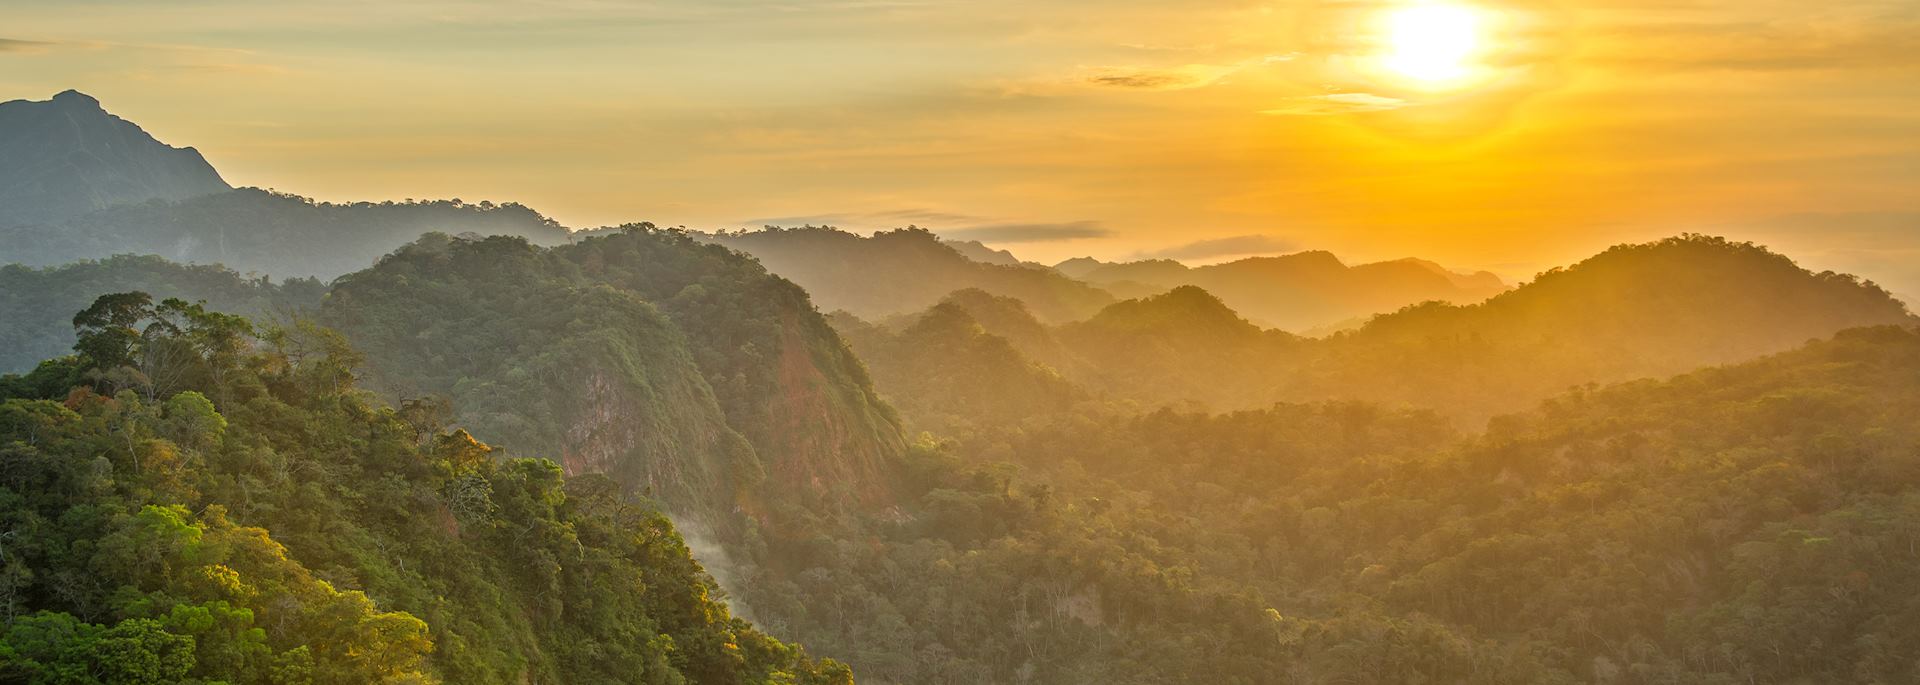 Sunset over a Bolivian rainforest